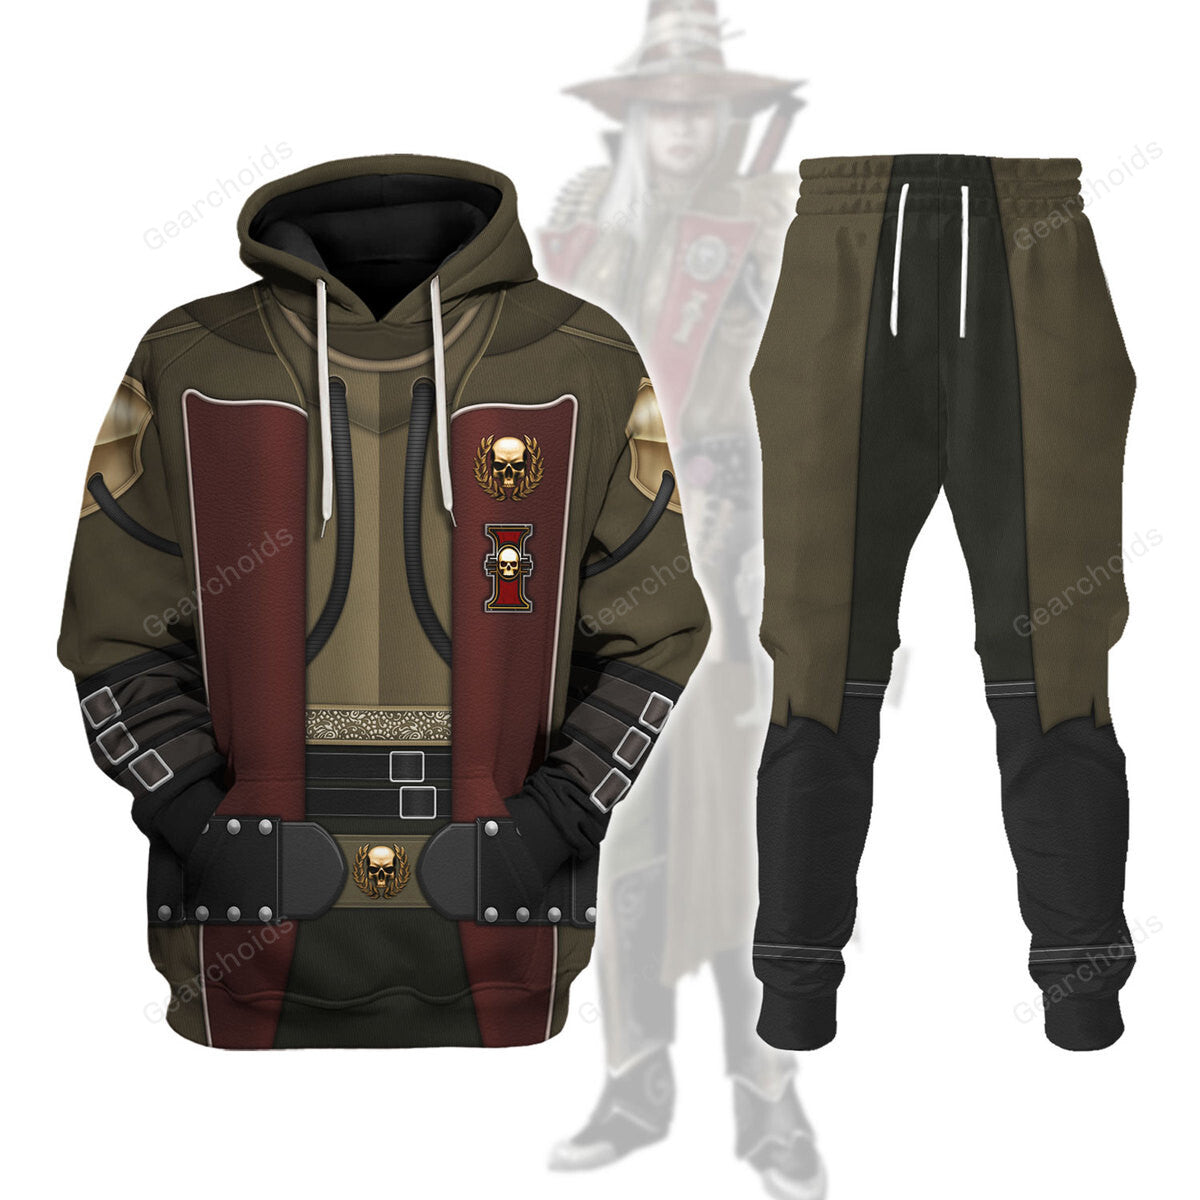 Warhammer Ordo Hereticus - Costume Cosplay Hoodie Sweatshirt Sweatpants